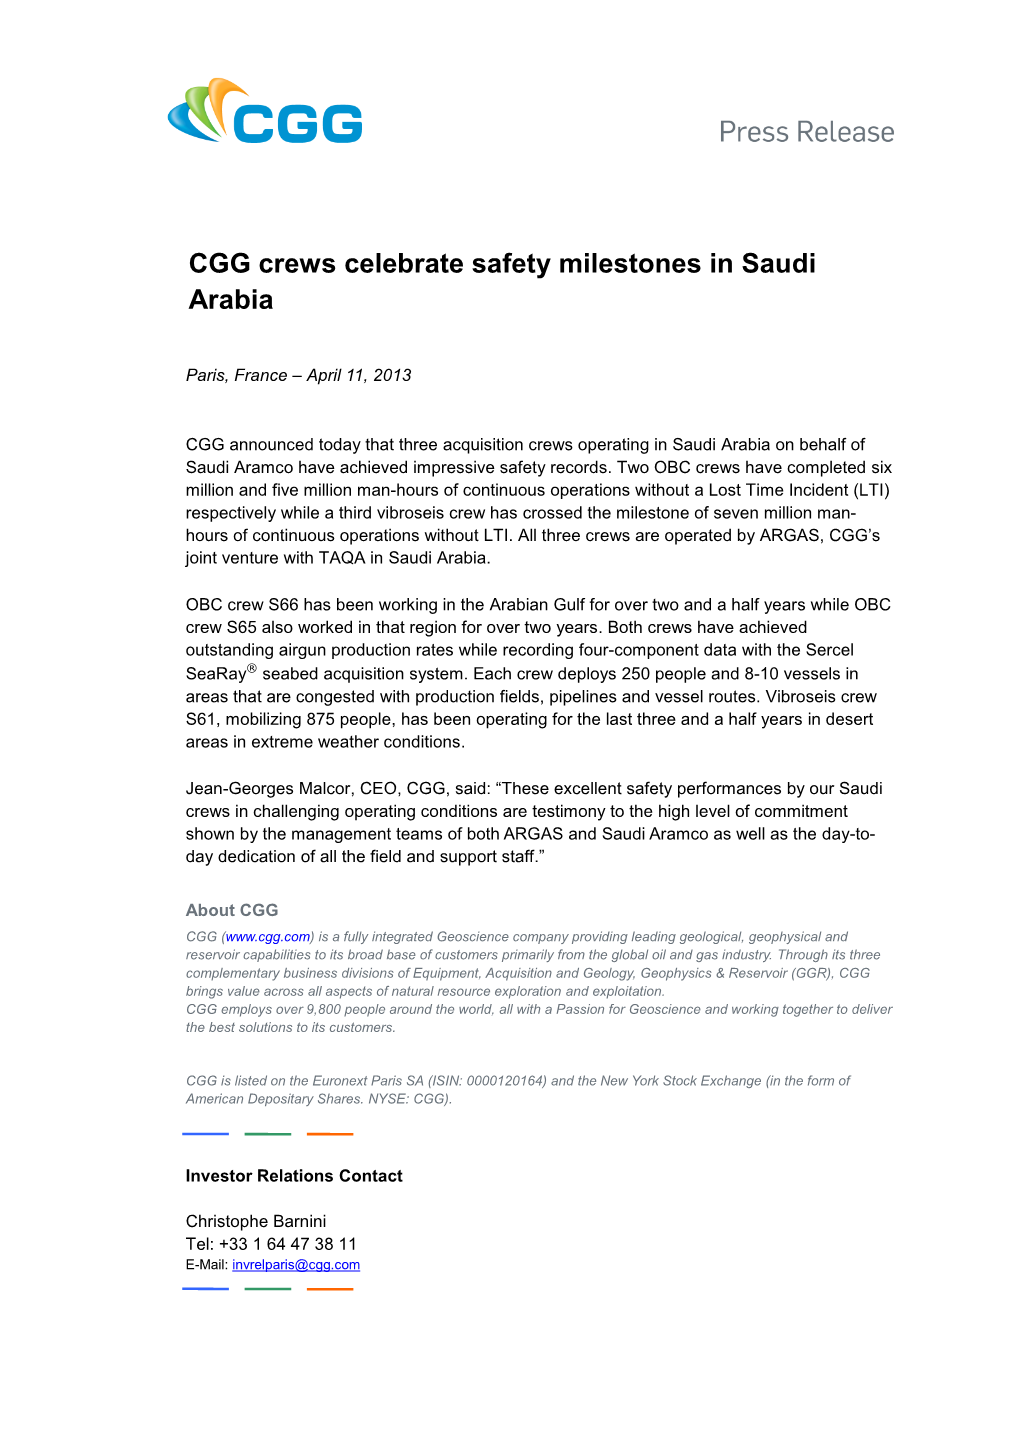 CGG Crews Celebrate Safety Milestones in Saudi Arabia